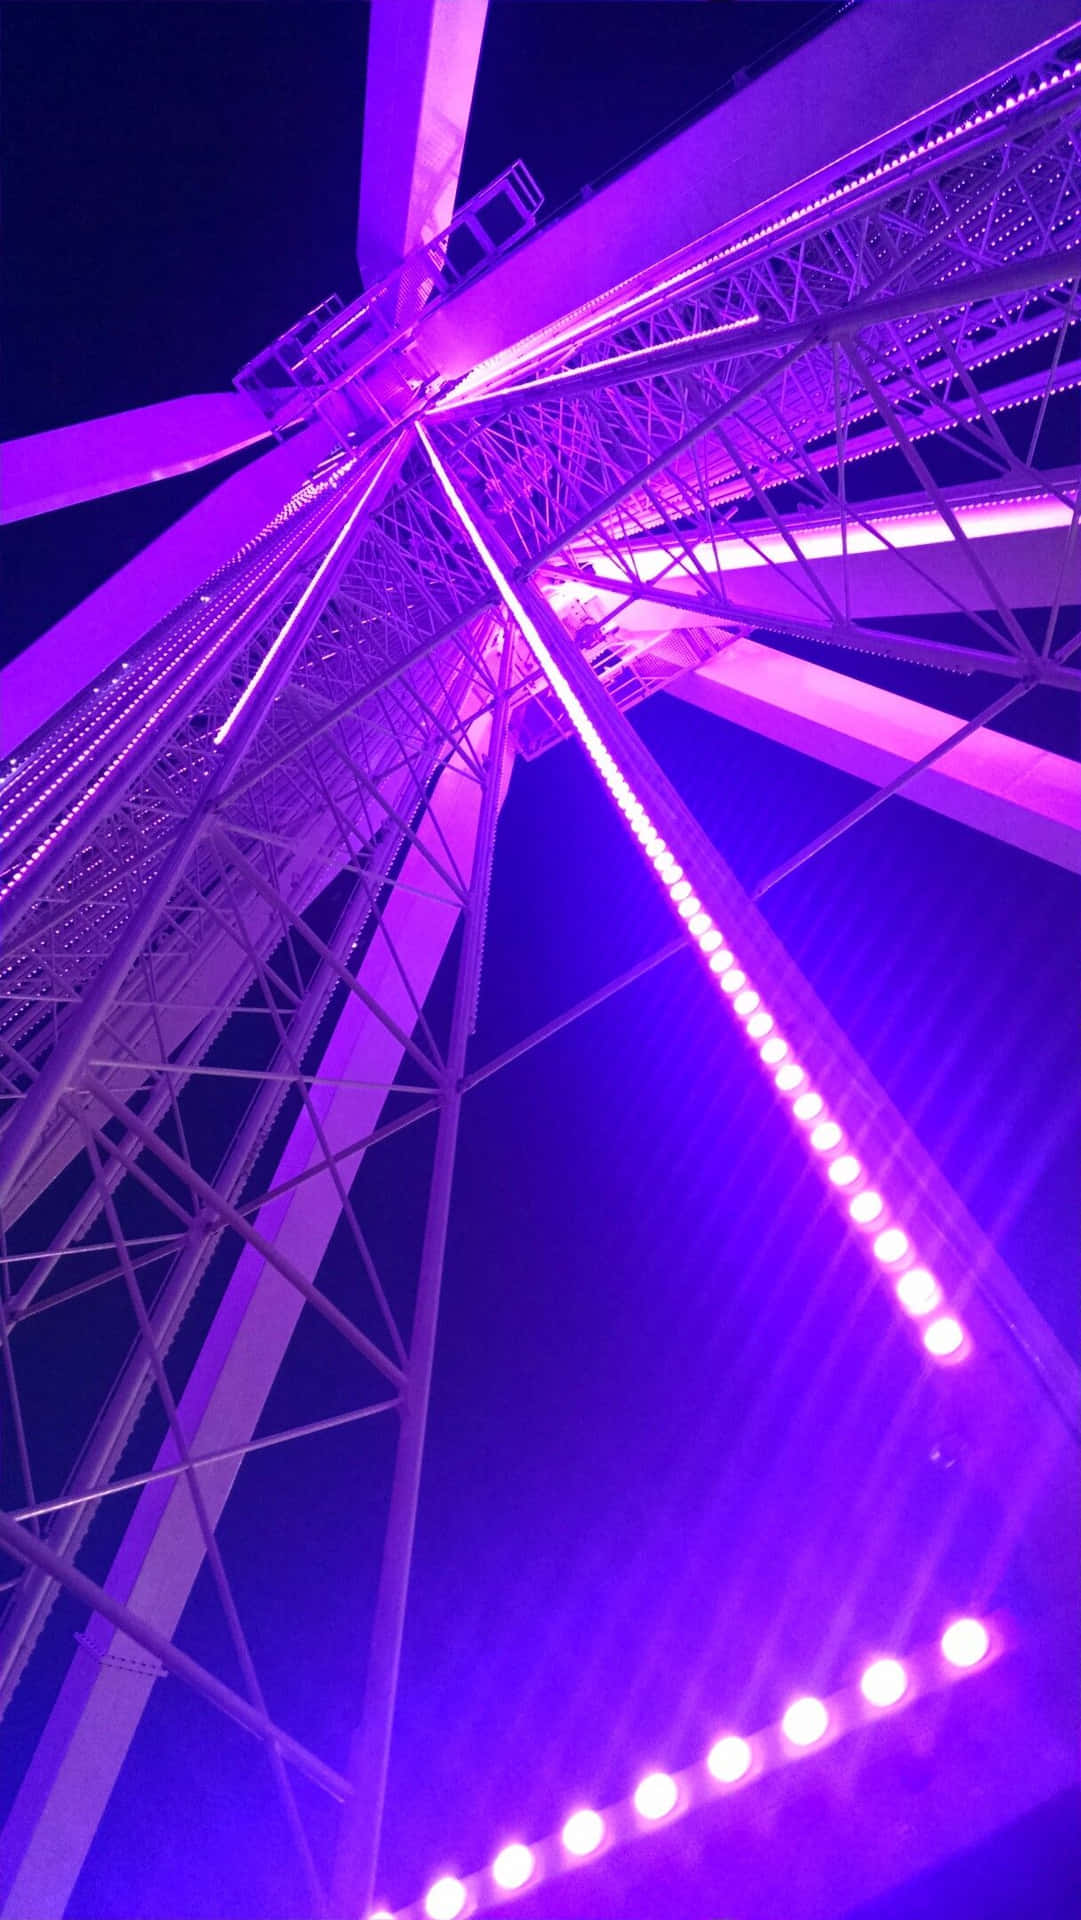 Imagemde Uma Roda-gigante Roxa Com Luzes À Noite Em Um Fundo Estético.